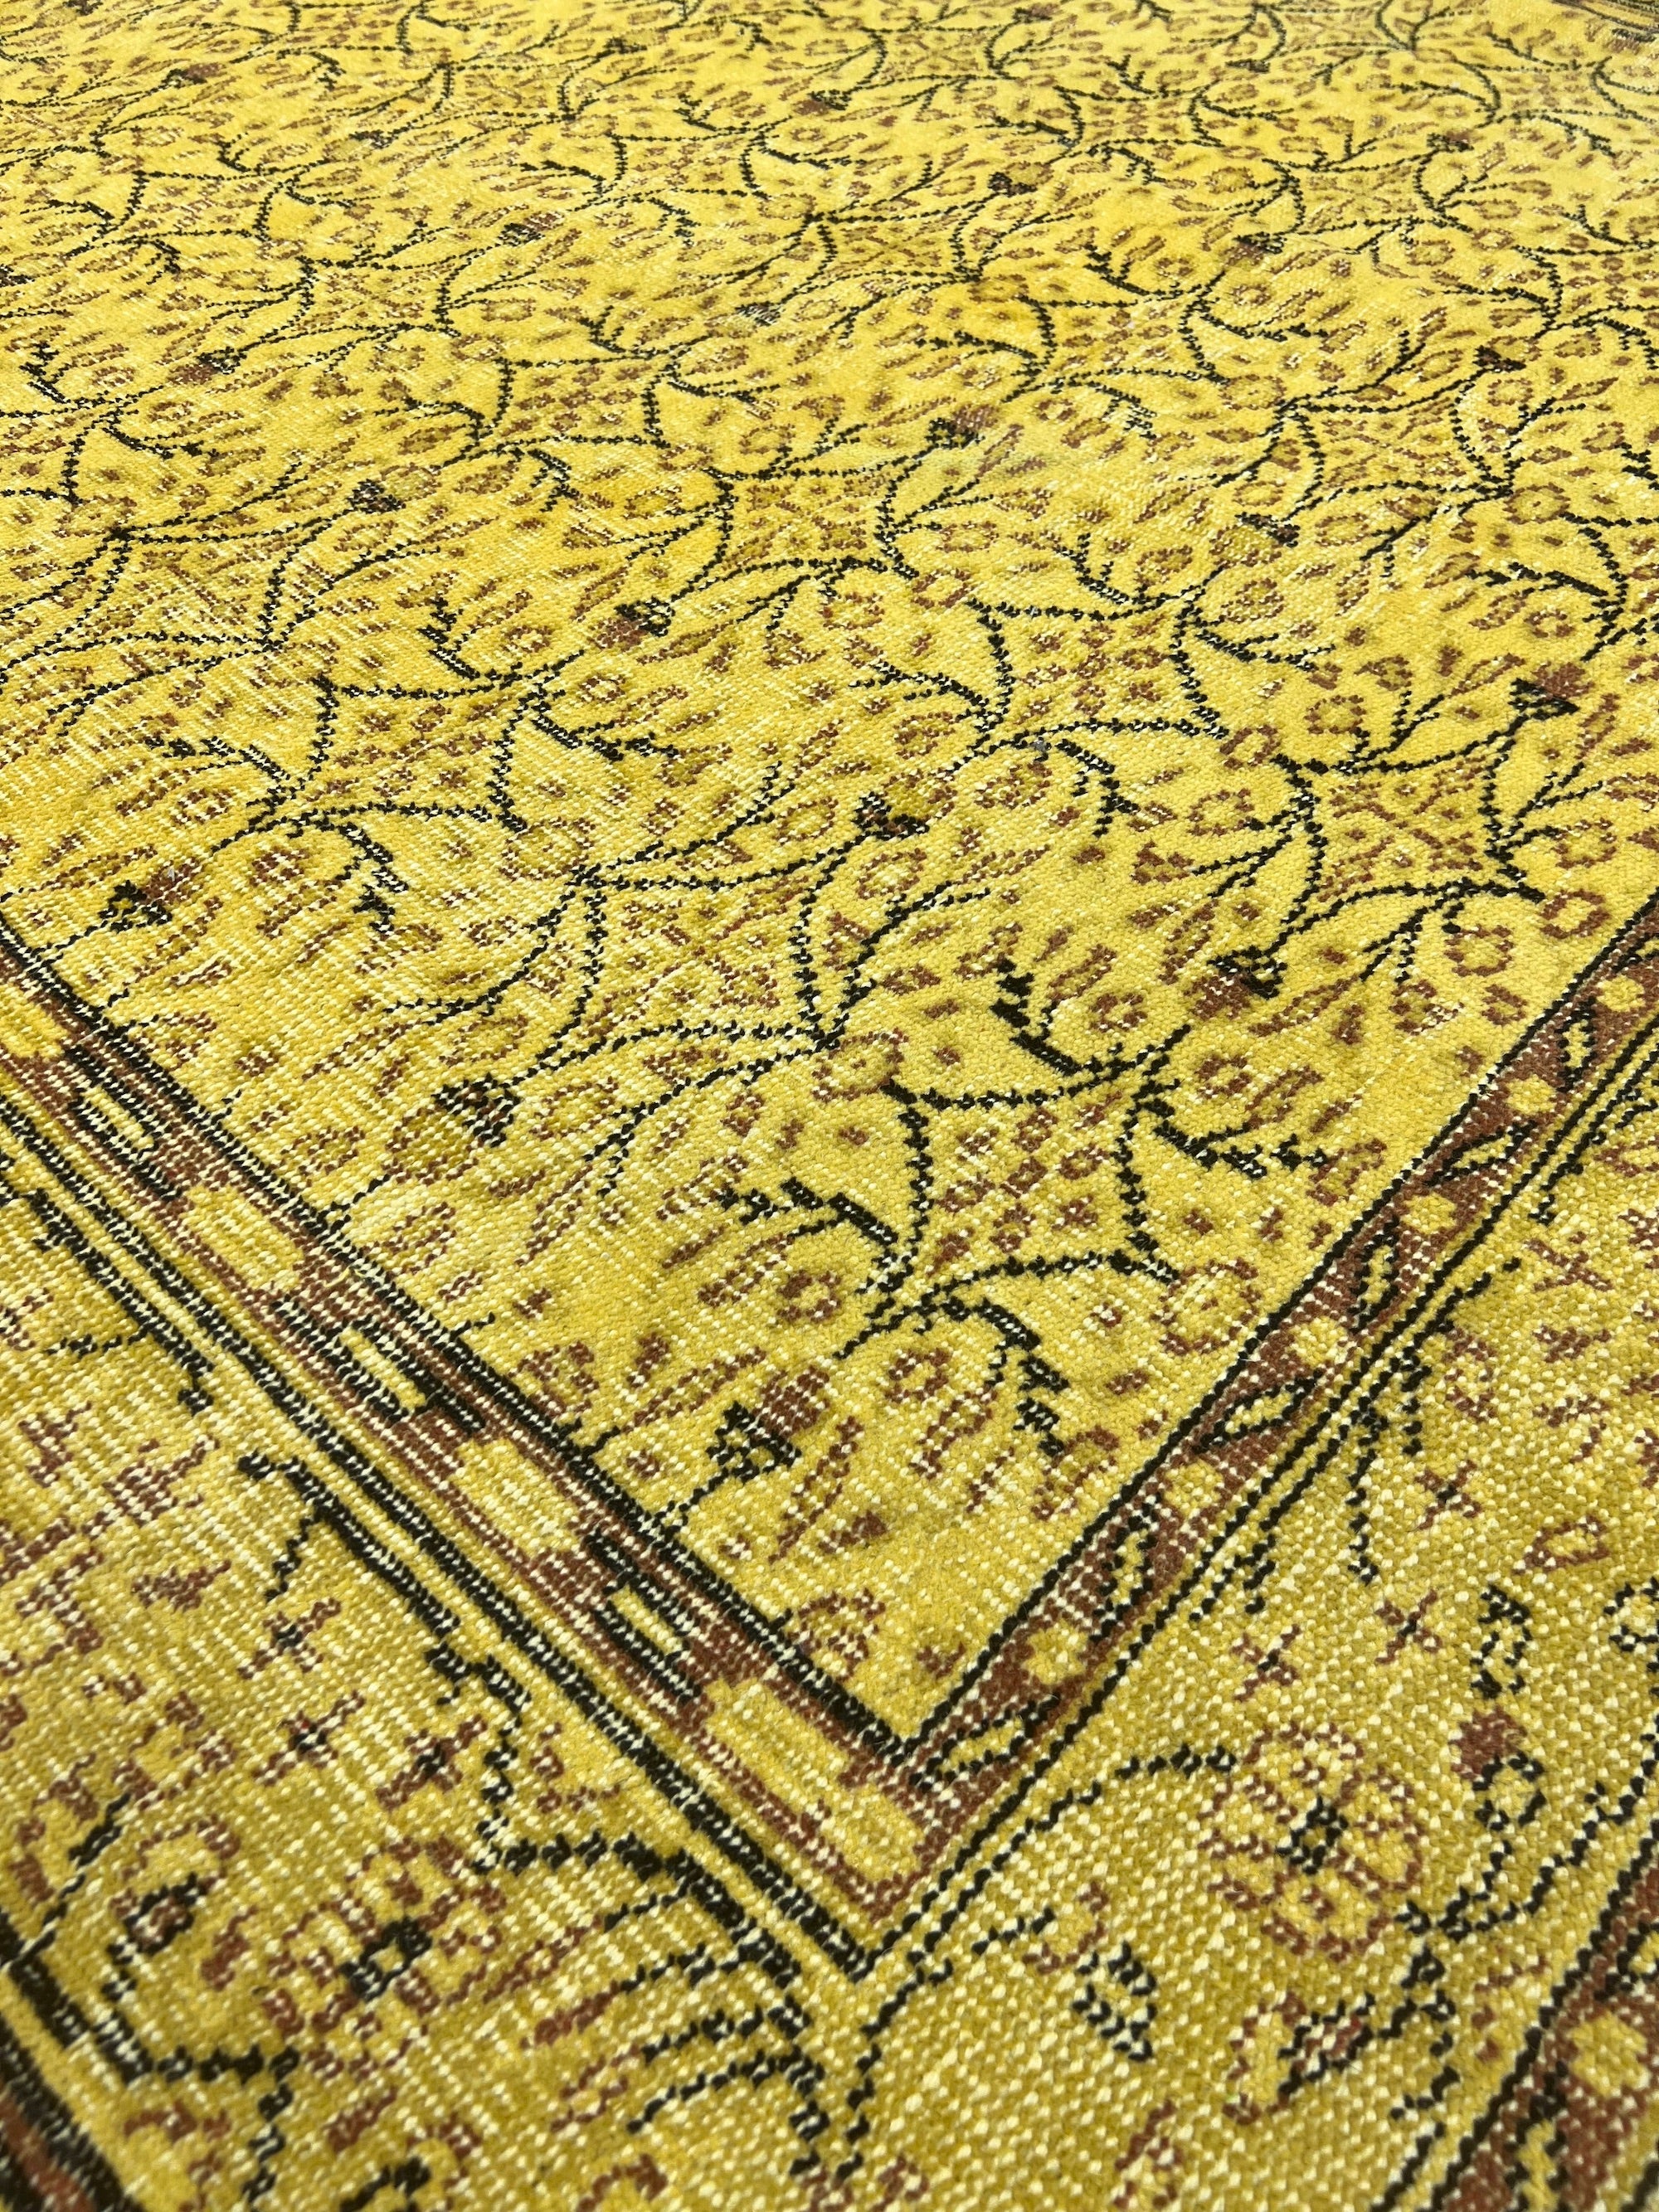 Tourmaline - Vintage Yellow Overdyed Rug - kudenrugs